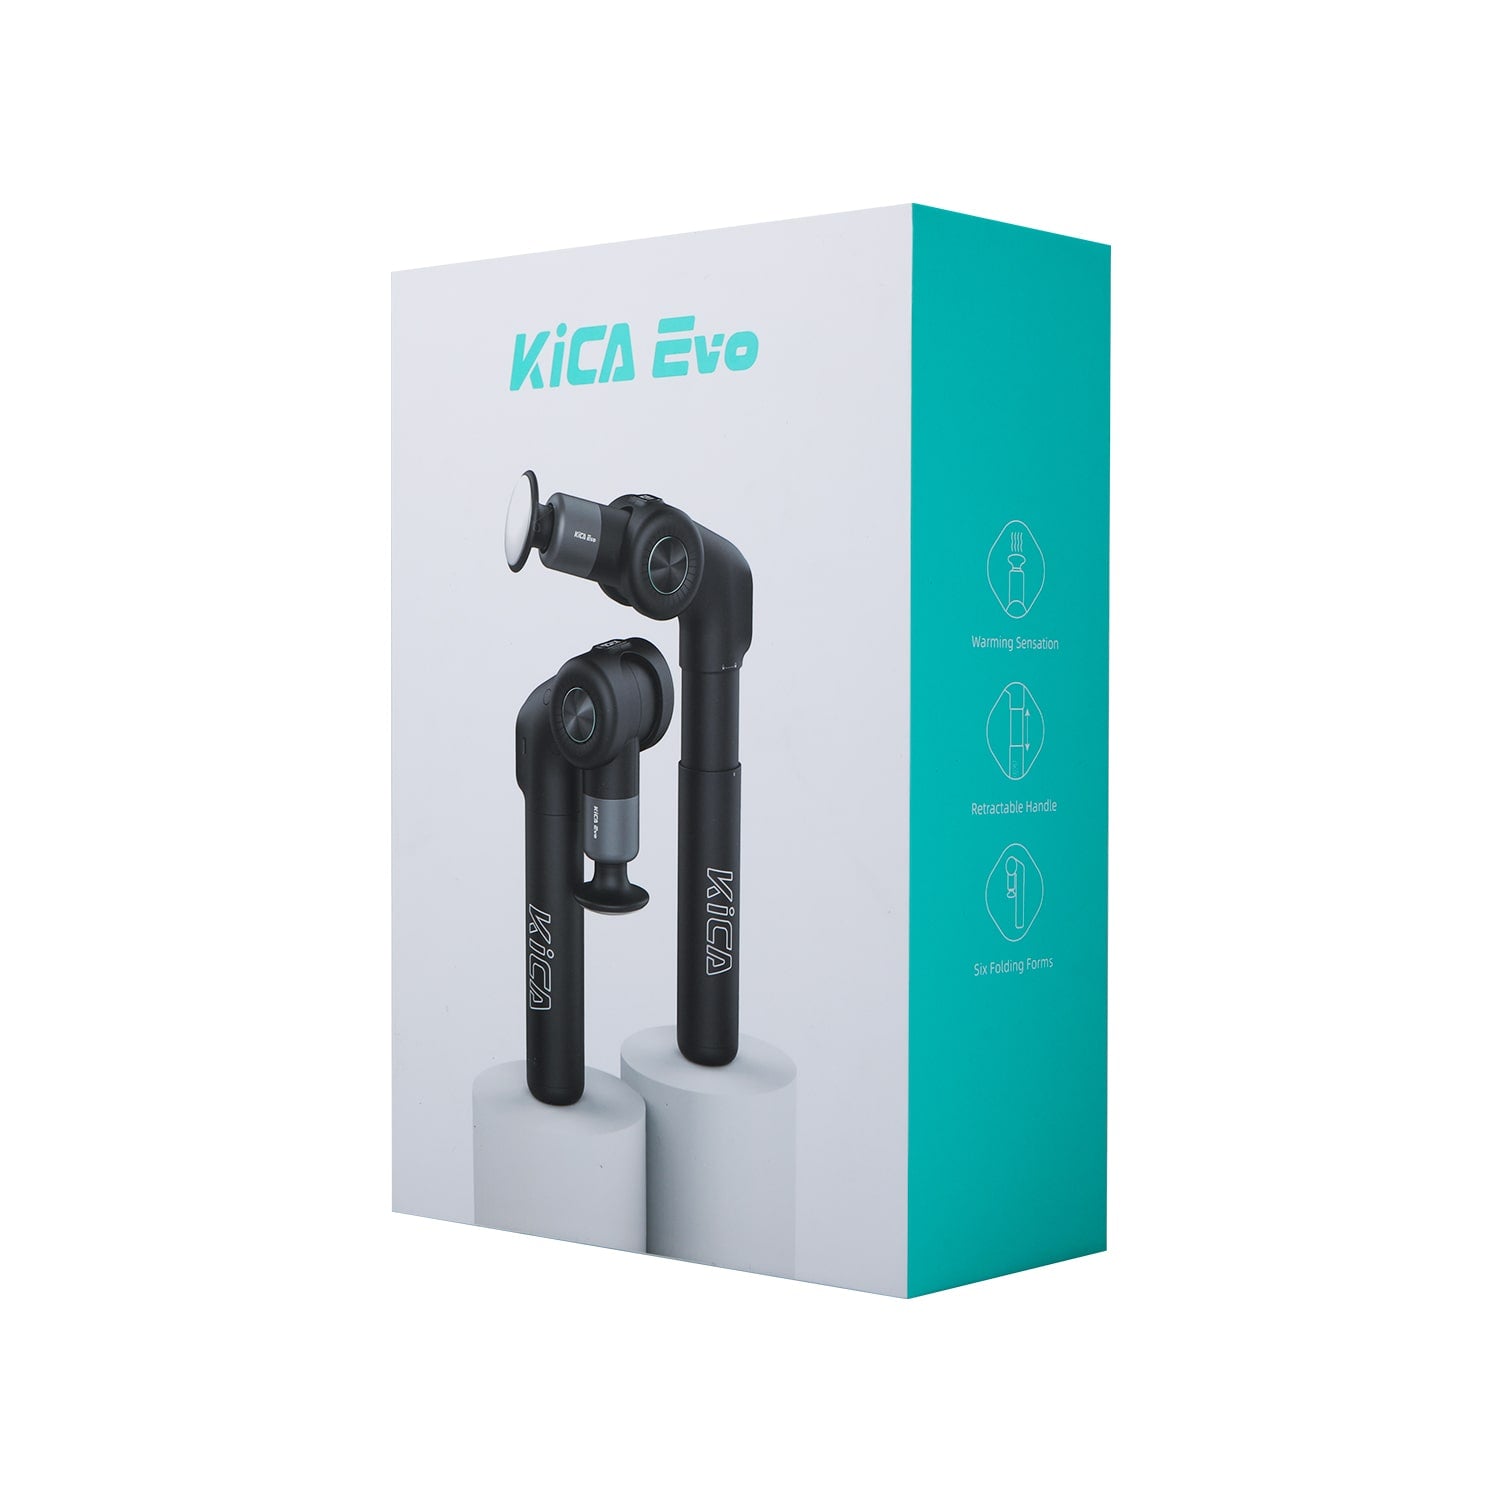 KiCA Evo Massage Gun package